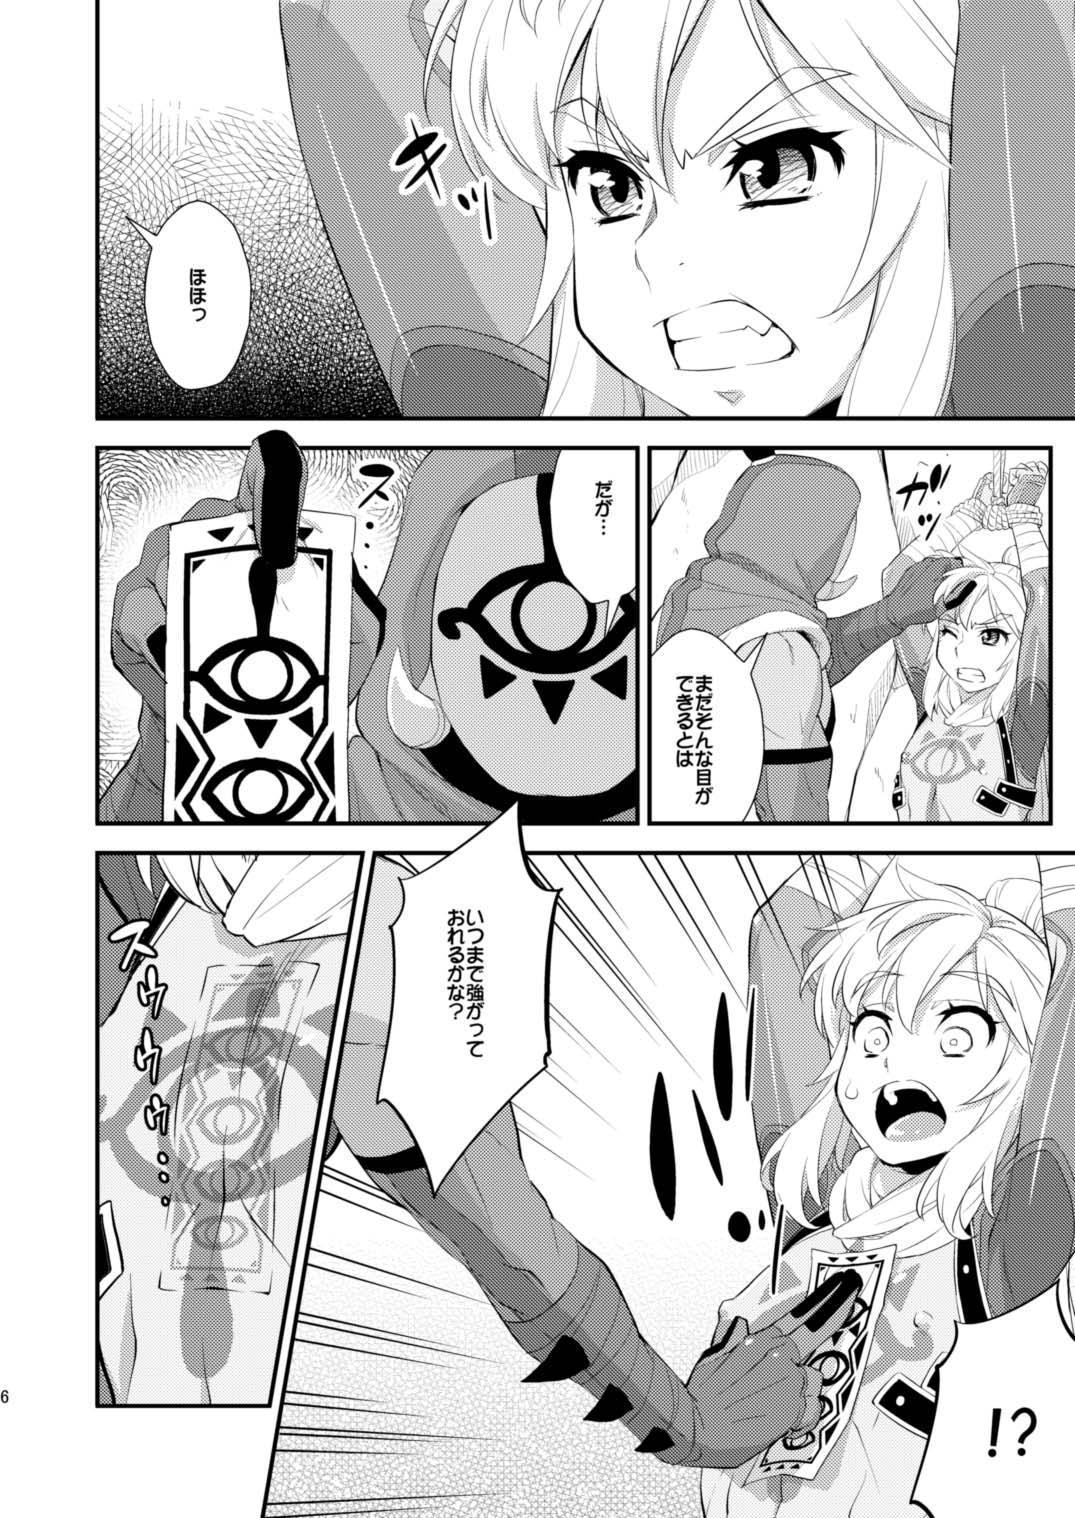 Analfucking Ibuki no Yuusha Kyousei Kyonyuuka Kikiippatsu! - The legend of zelda Slapping - Page 4